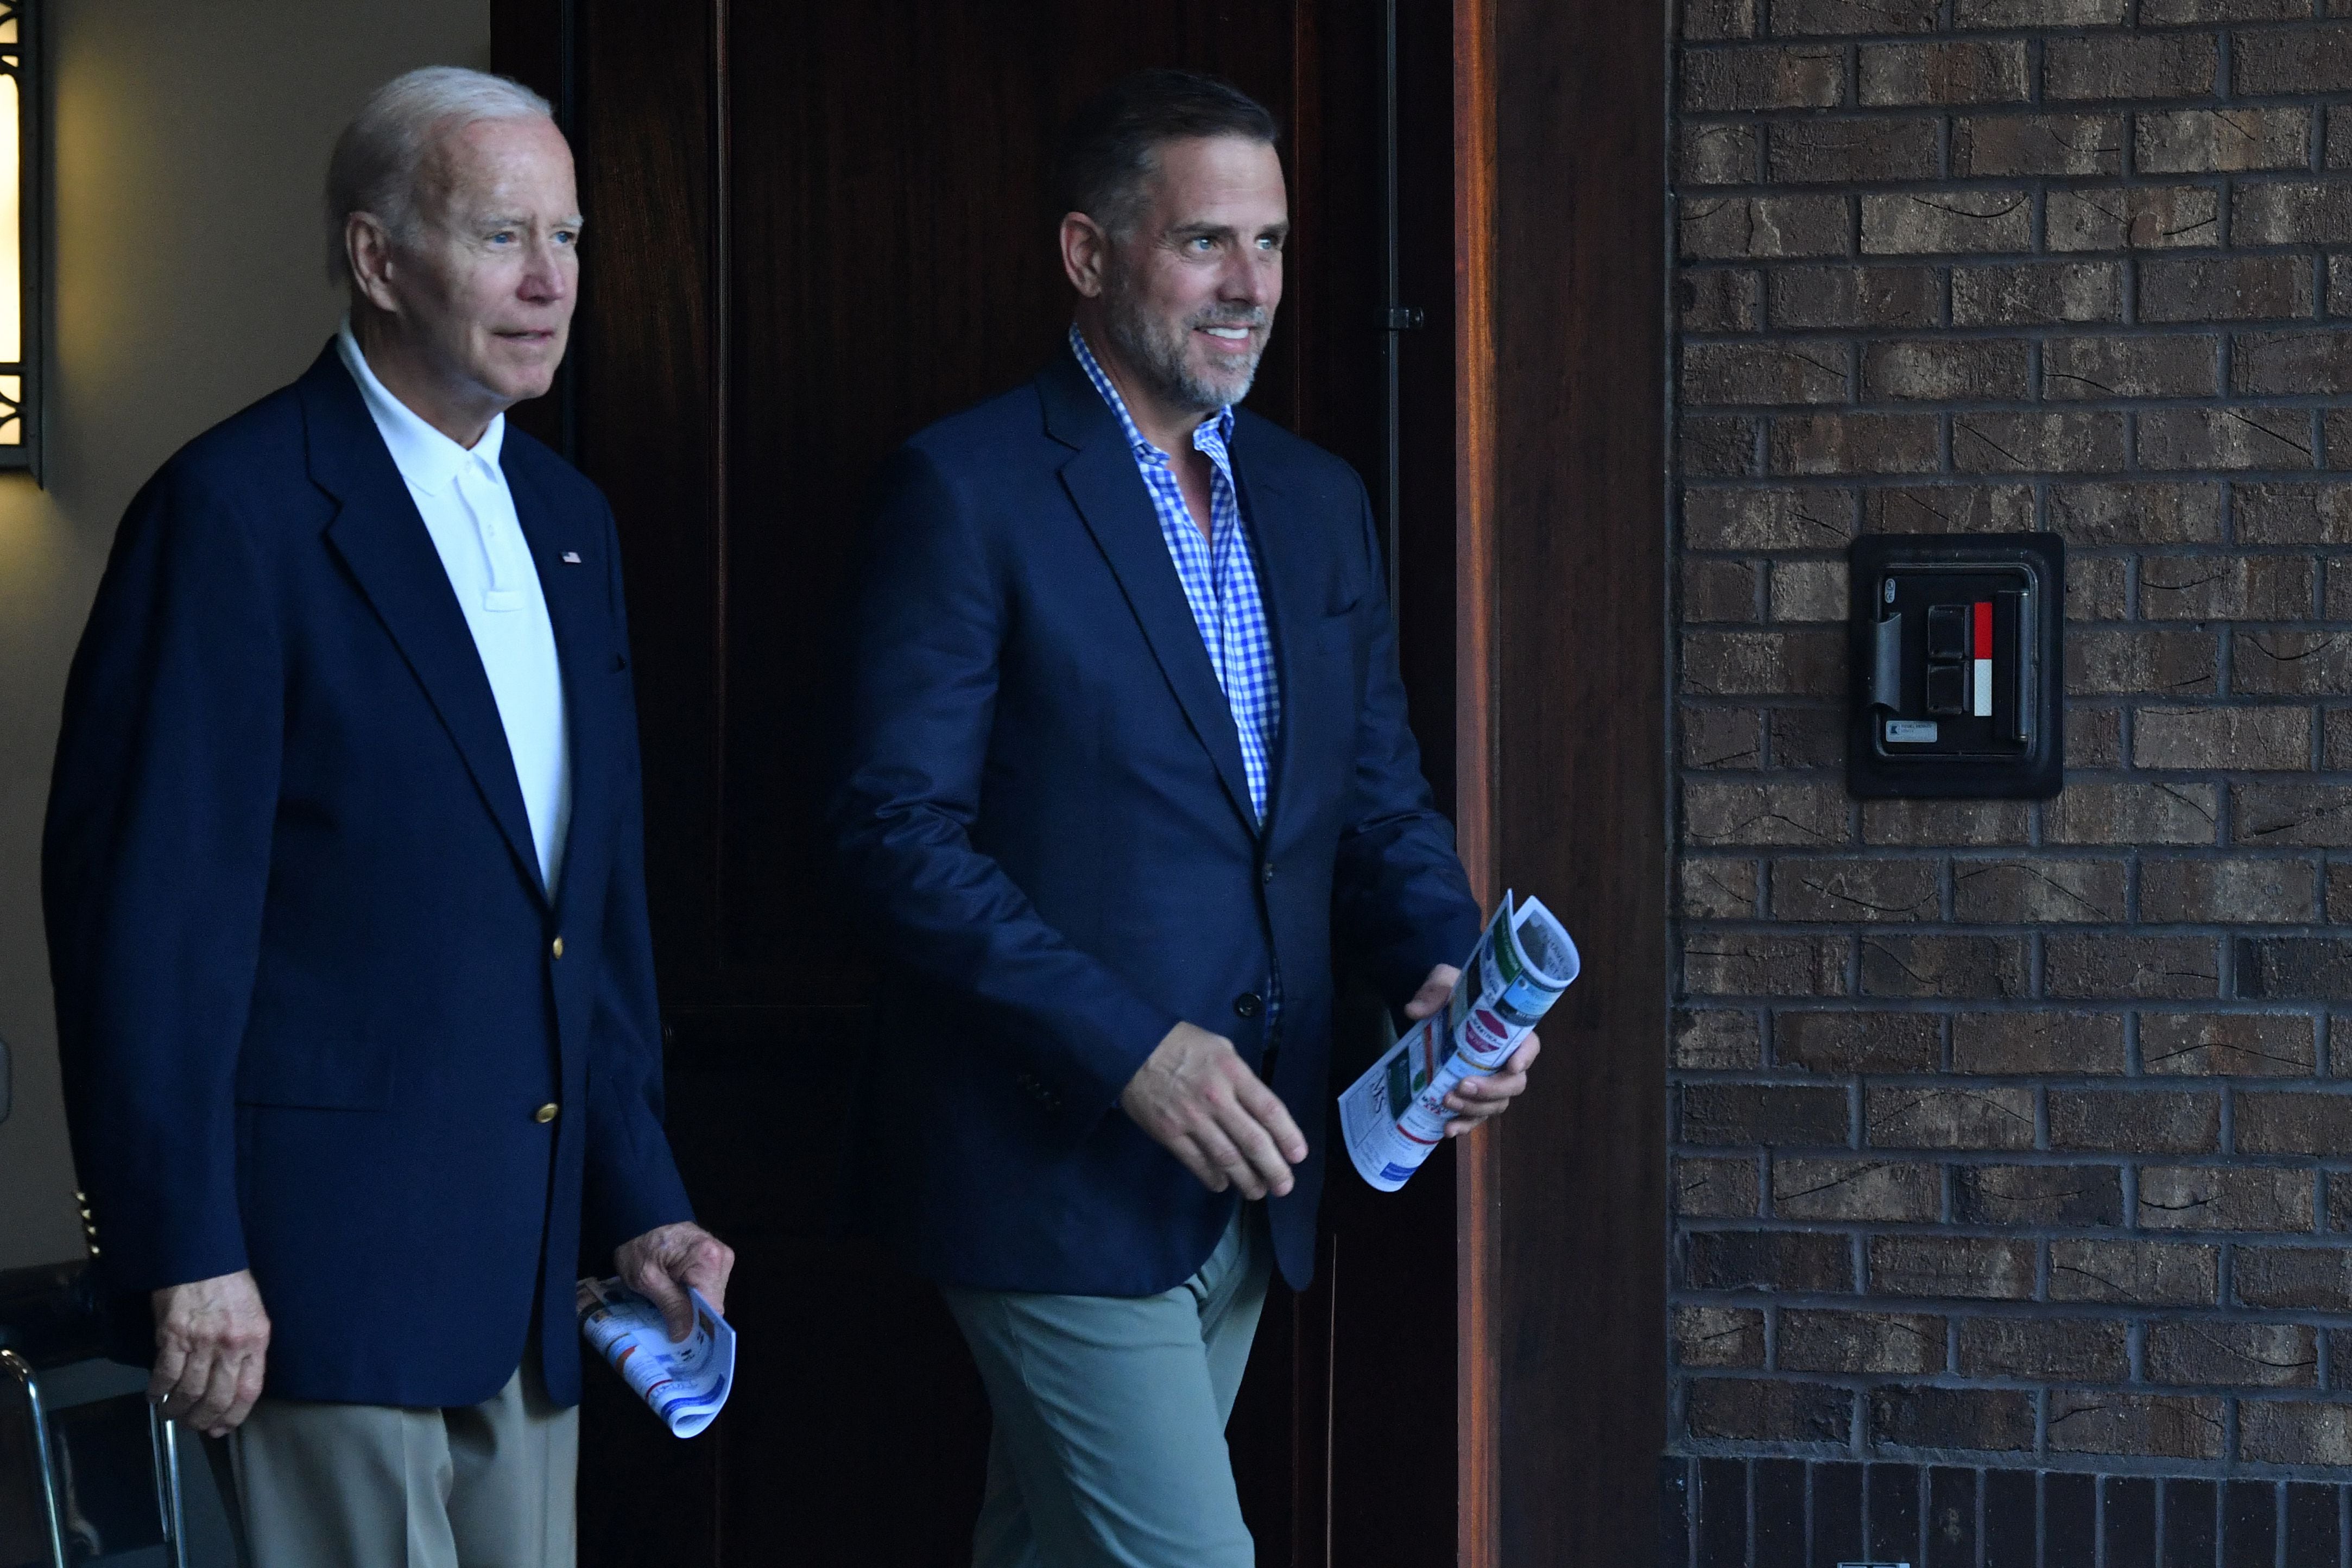 El presidente estadounidense Joe Biden (izq.) junto a su hijo Hunter Biden. (Foto de Nicholas Kamm / AFP)